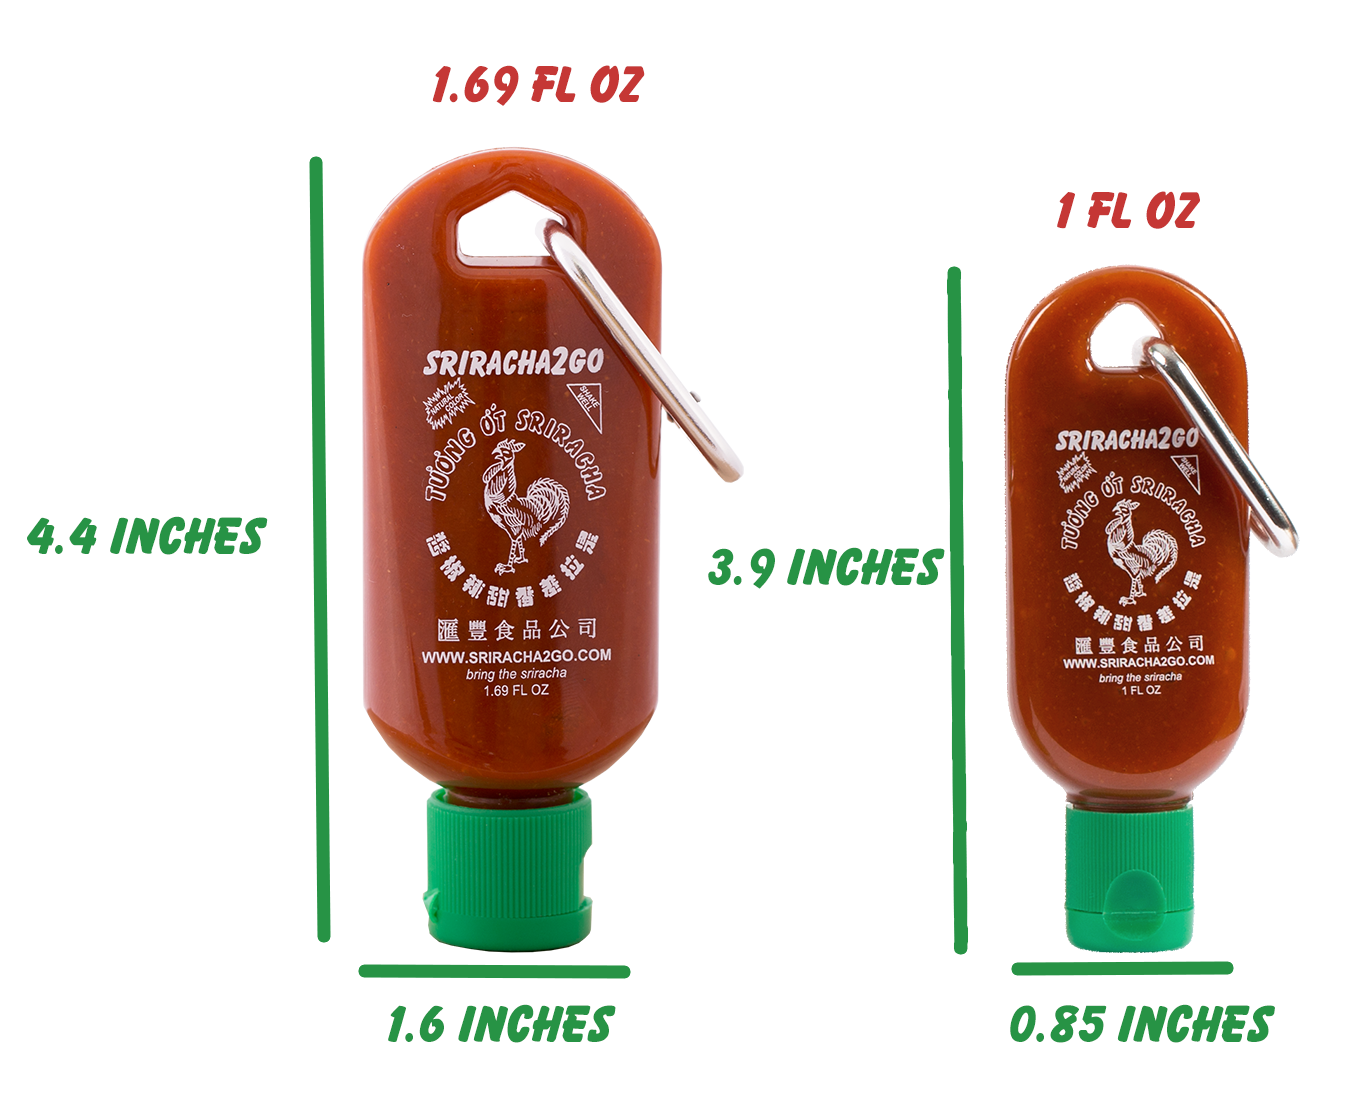 Sriracha To Go Keychain Size Comparison